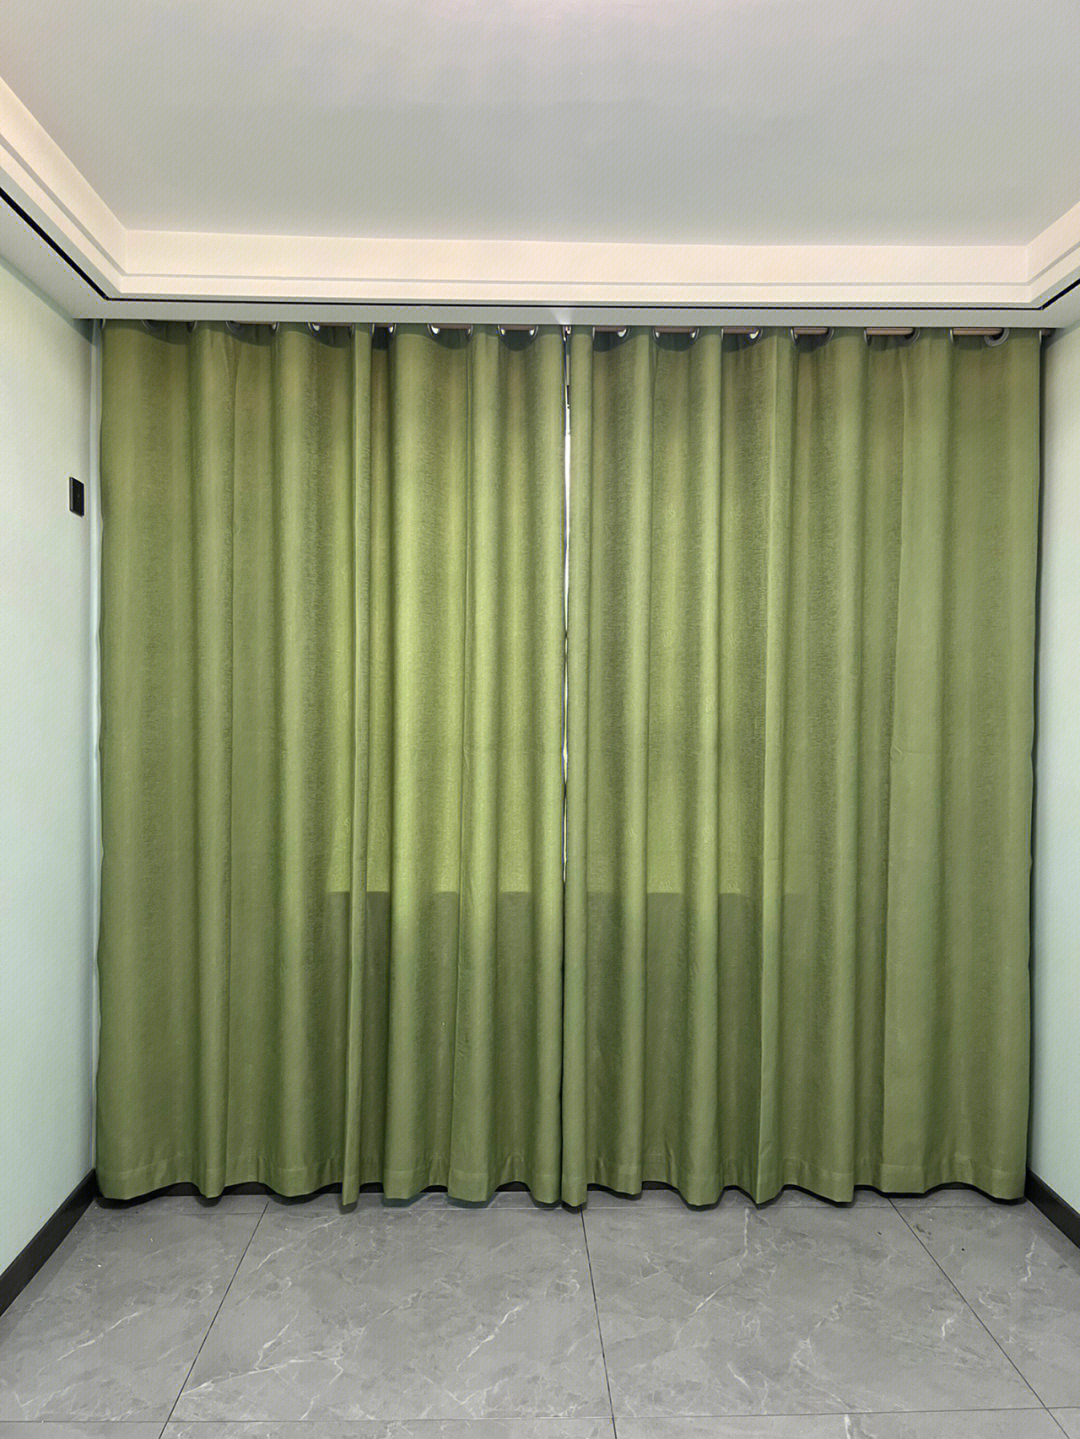 青绿色窗帘搭配效果图图片